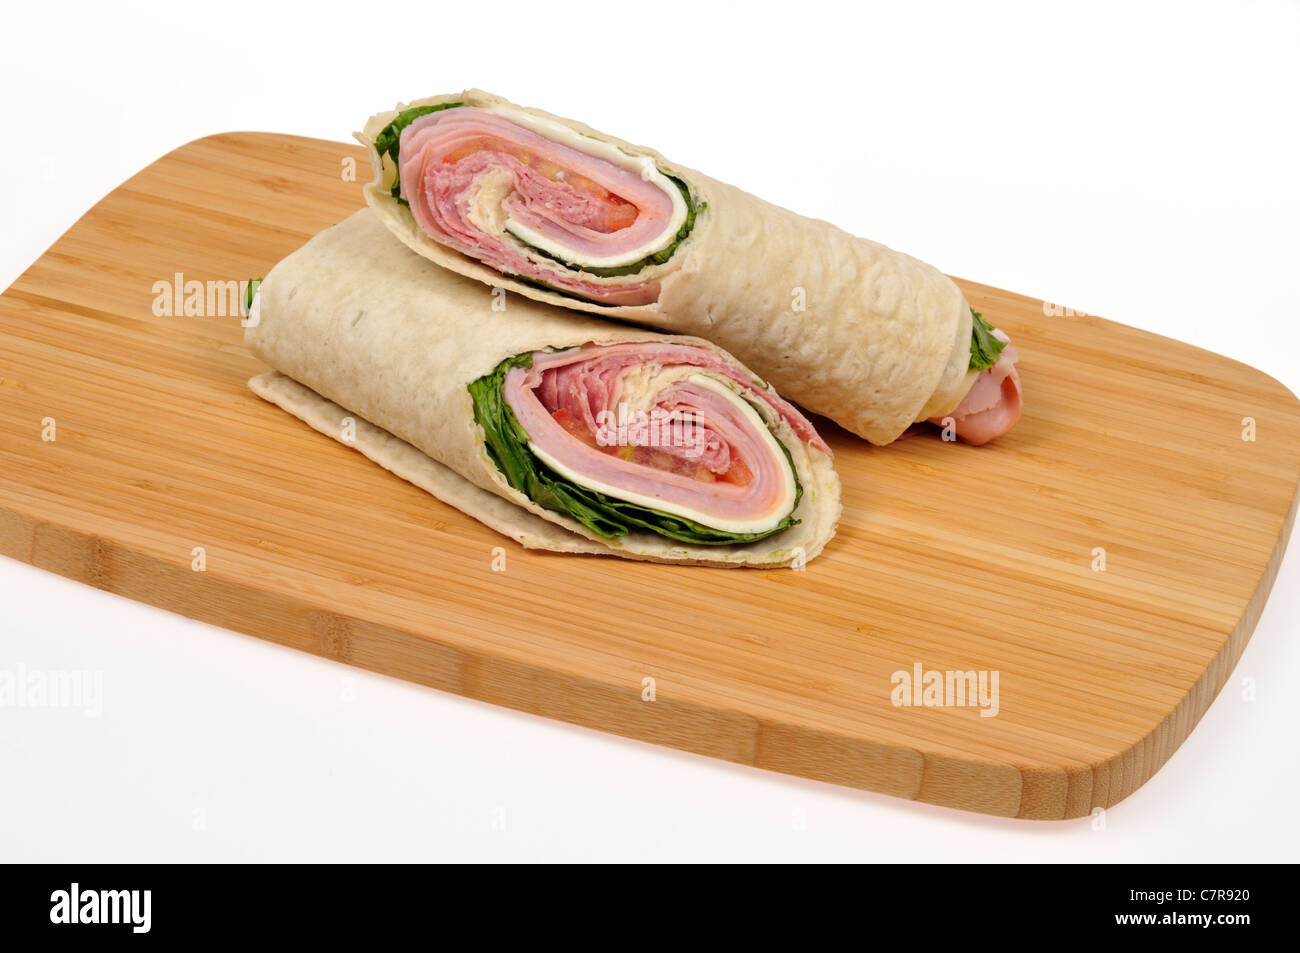 https://c8.alamy.com/comp/C7R920/italian-sandwich-wrap-cut-in-half-on-wood-cutting-board-on-white-background-C7R920.jpg